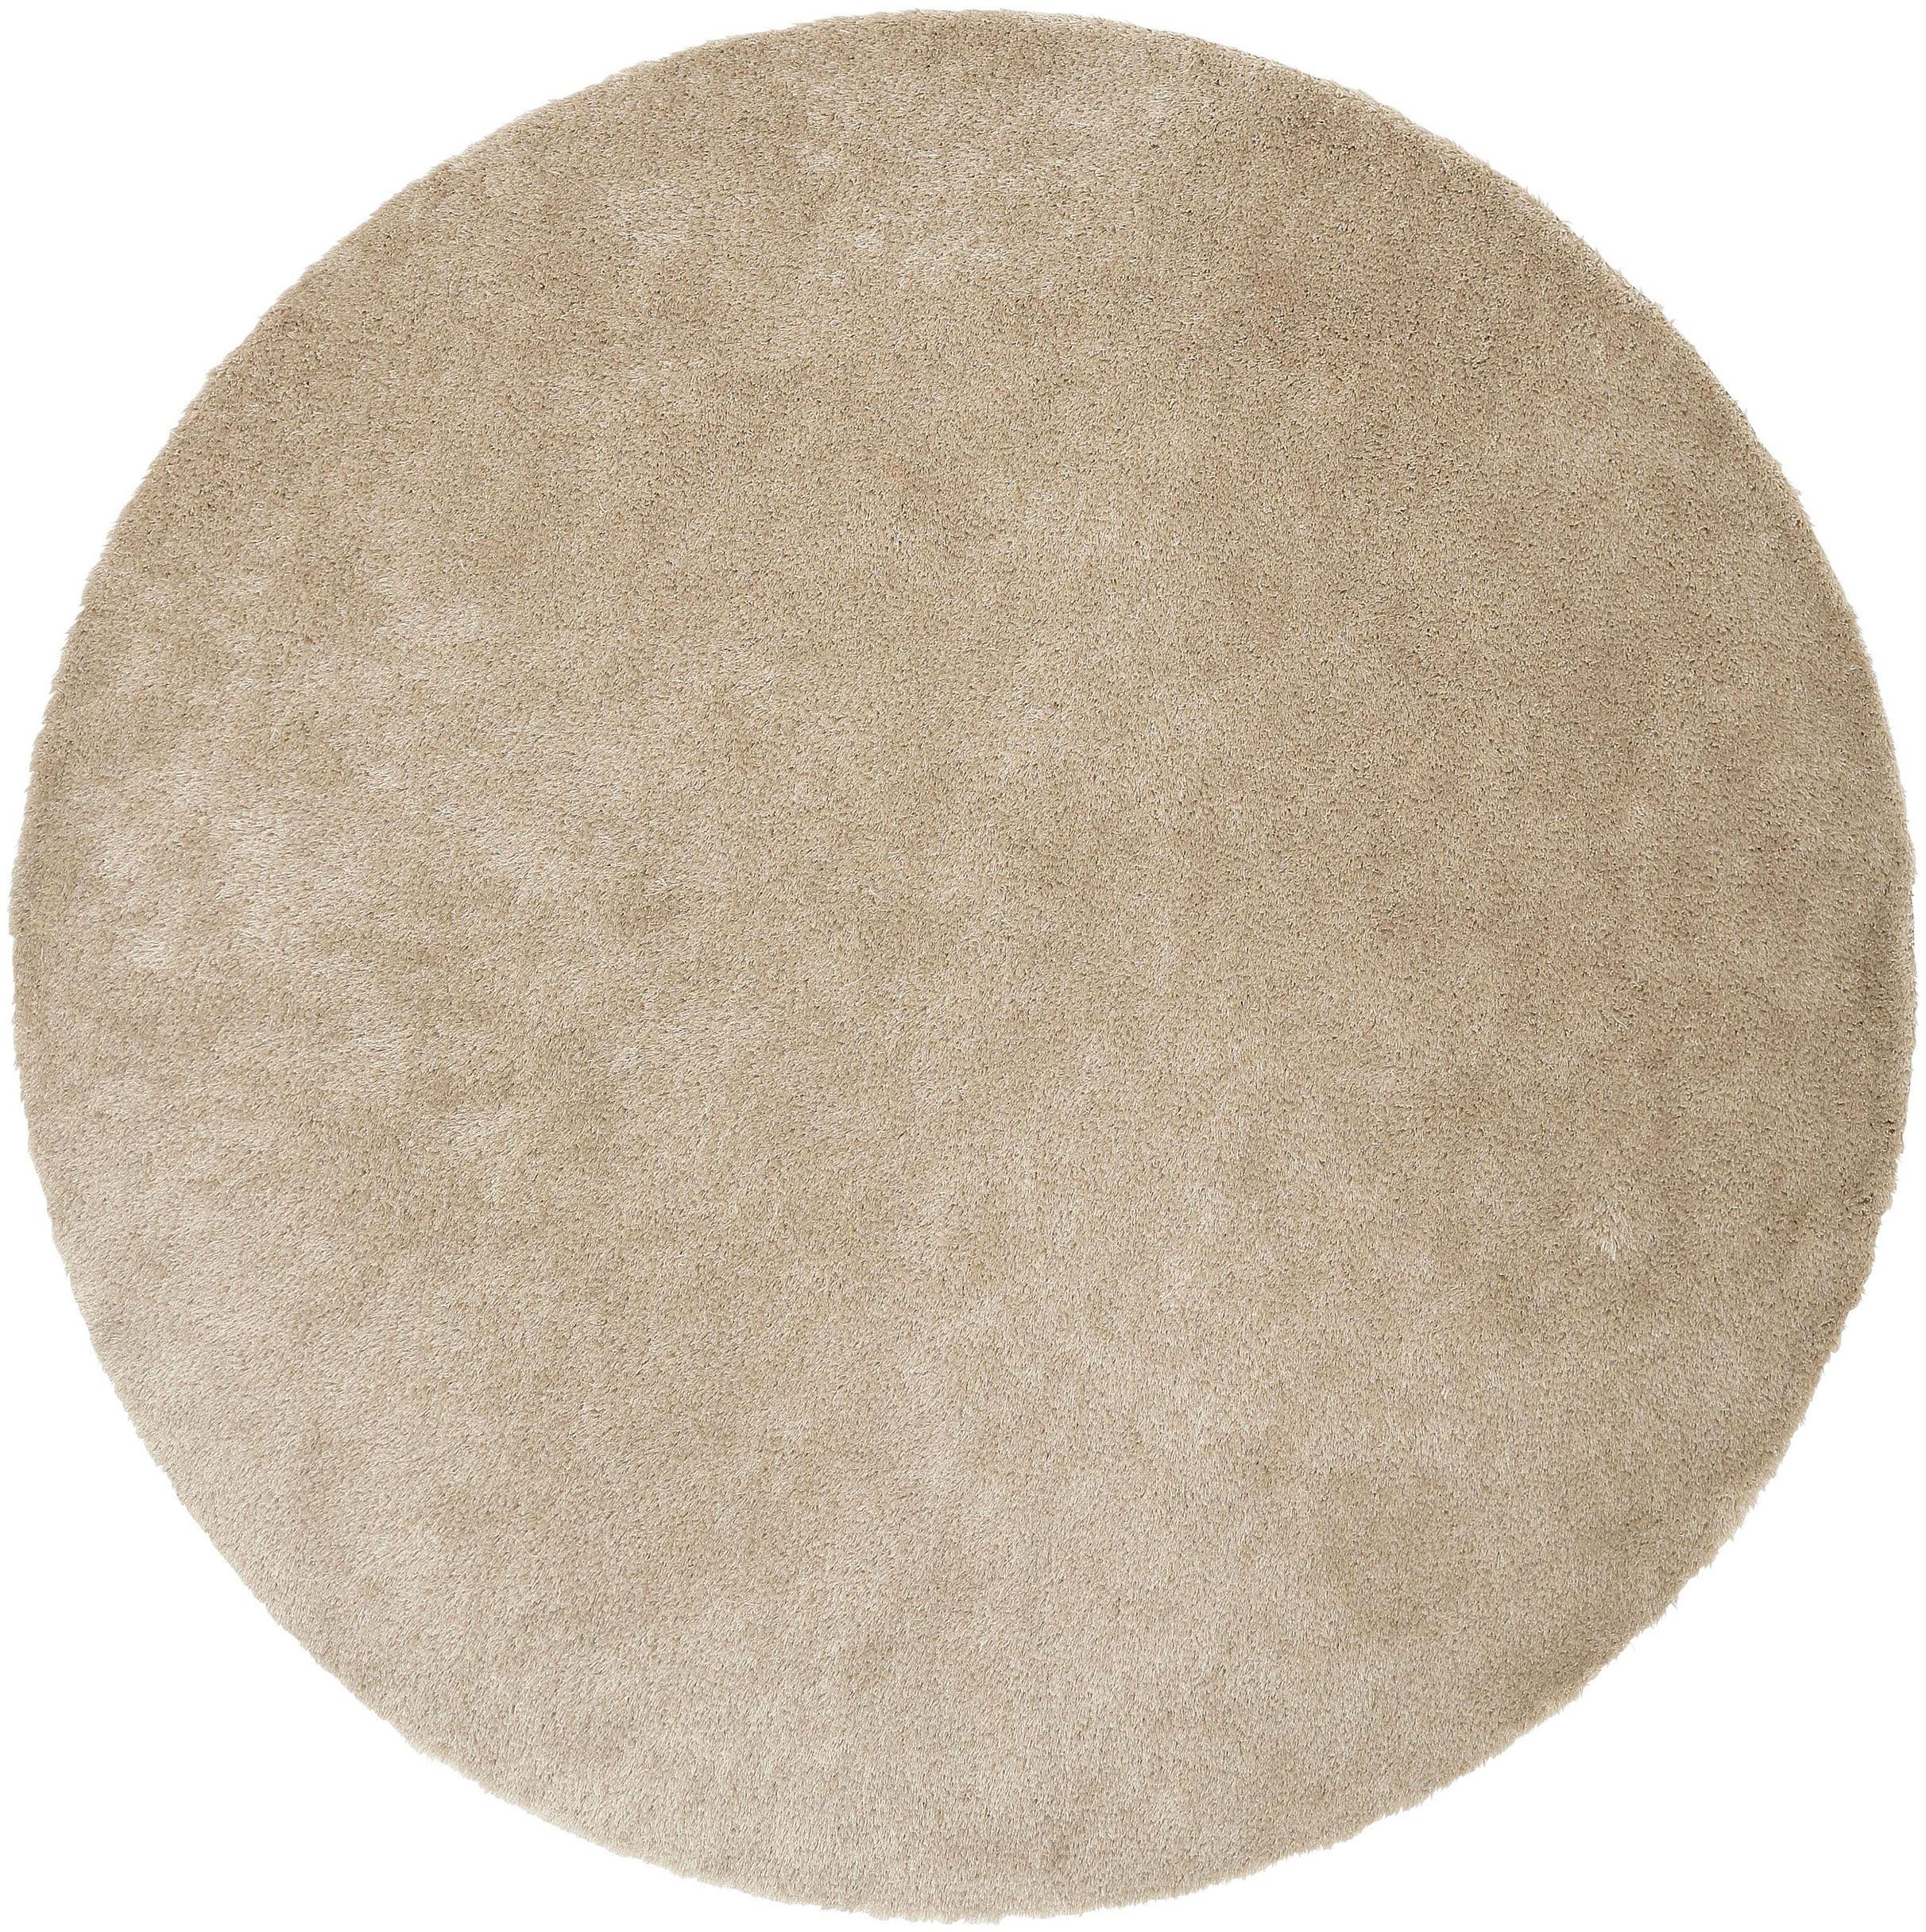 Hochflor-Teppich Deman, Home affaire, rund, Höhe: 25 mm, Uni-Farben, besonders weich und kuschelig durch Mikrofaser, rund sand